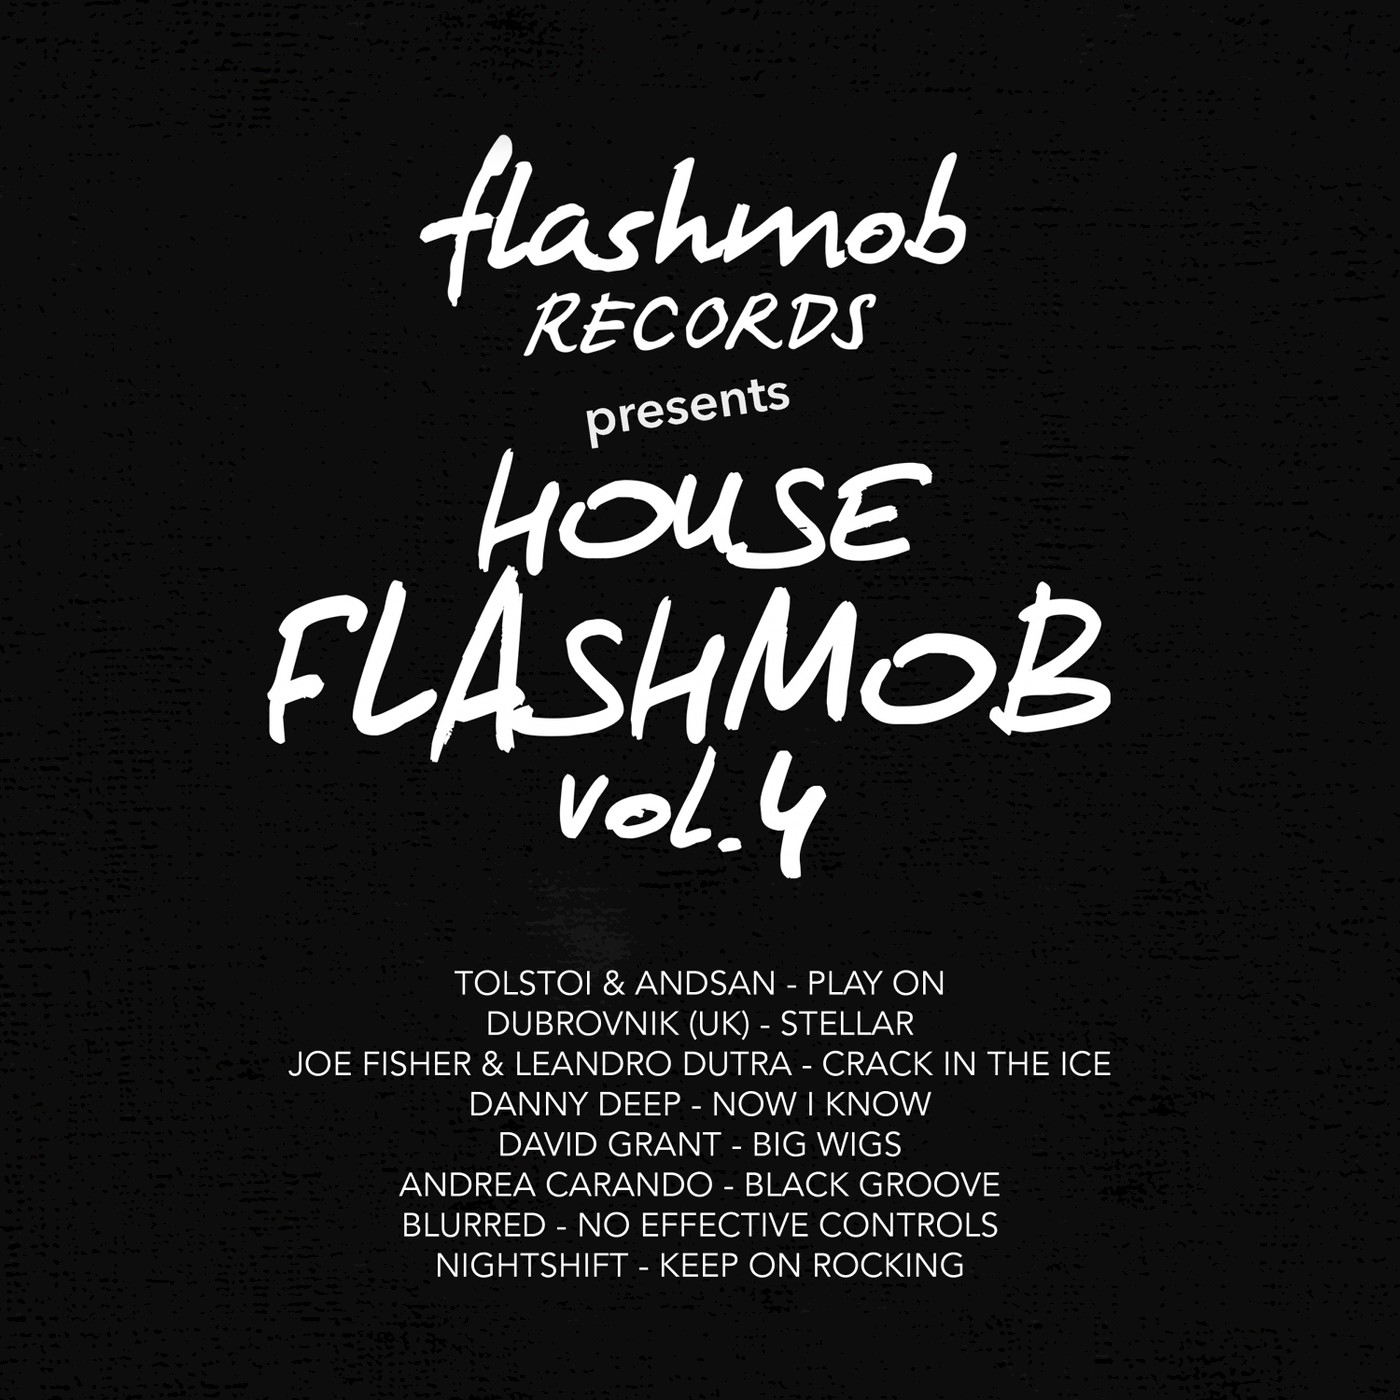 VA - House Flashmob, Vol. 4 / Flashmob Records